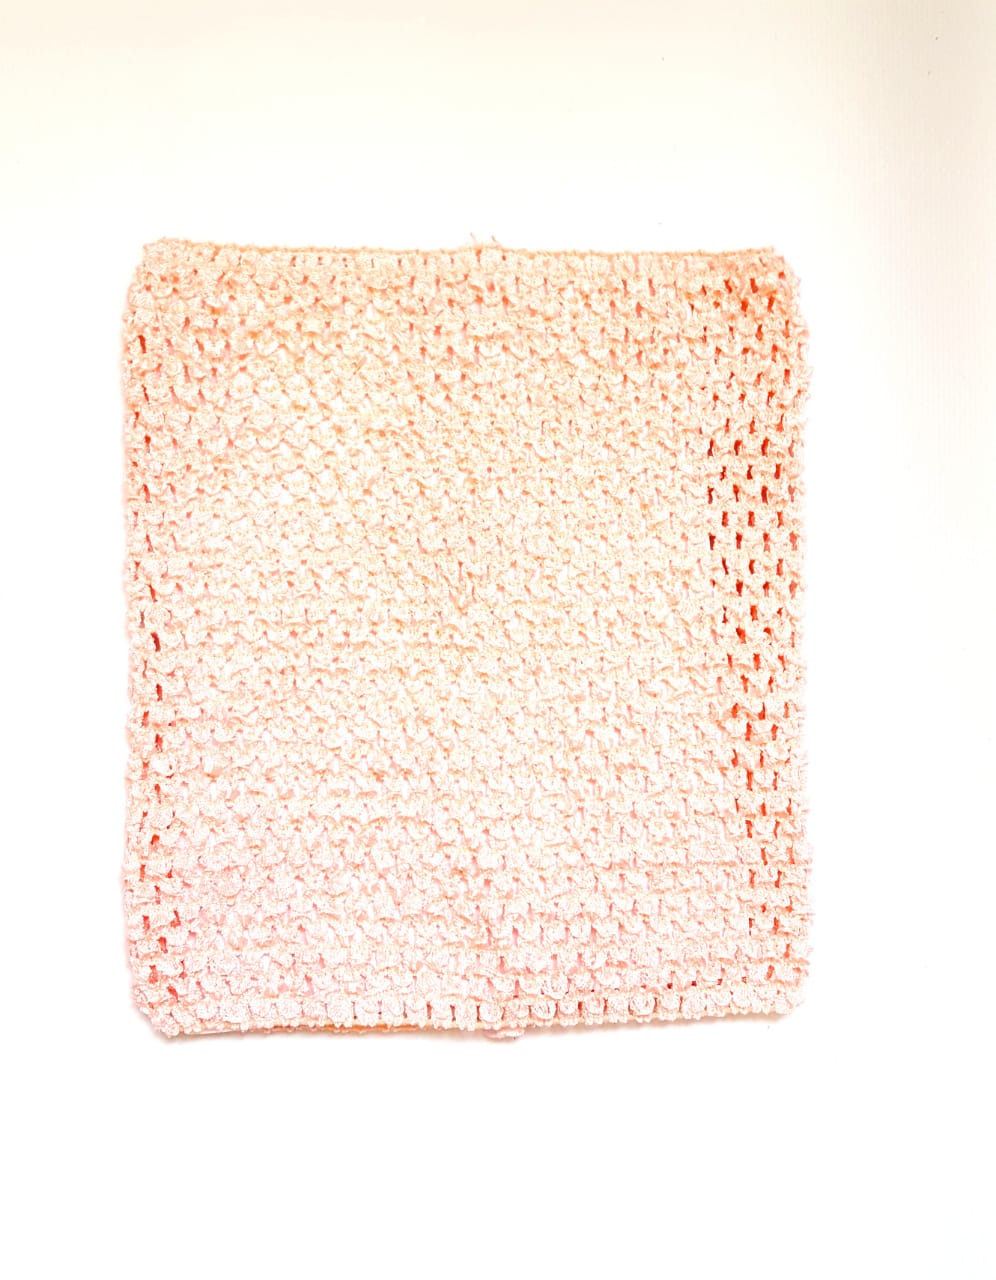 Ткань Caramelkalife Топ-резинка, размер 23*20 см. Цвет Персиковый.